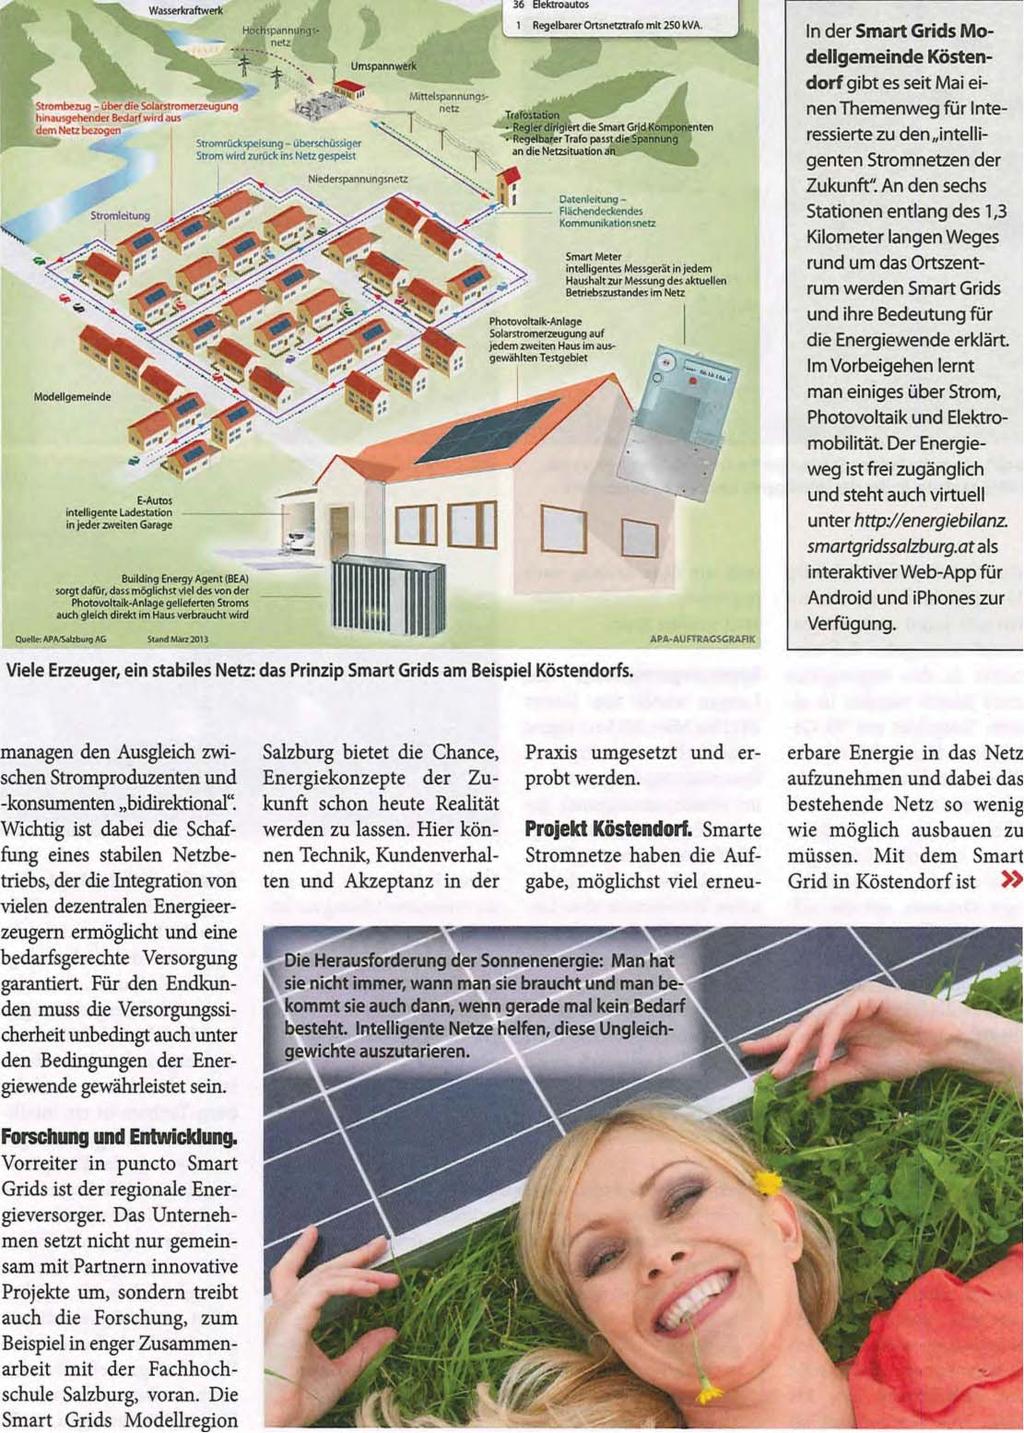 Weekend Magazin / Salzburg Seite 23 / 24.05.